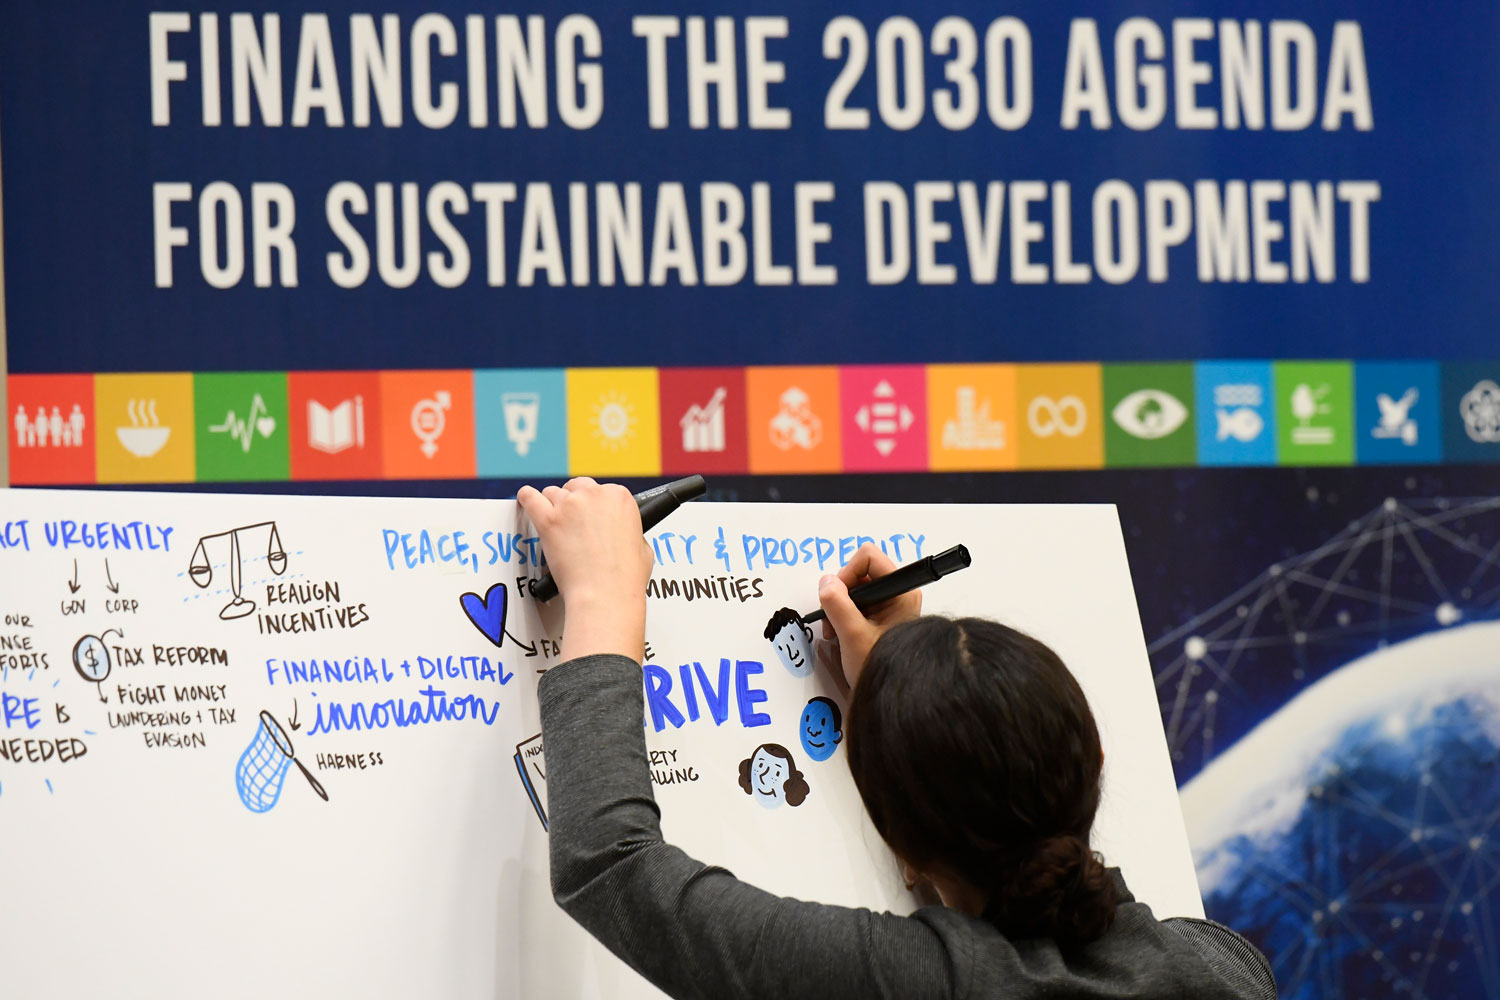 Ihminen piirtää taululle ajatuksia agenda 2030:n kestävän kehityksen tavoitteiden toteuttamisen rahoitukseen liittyen.